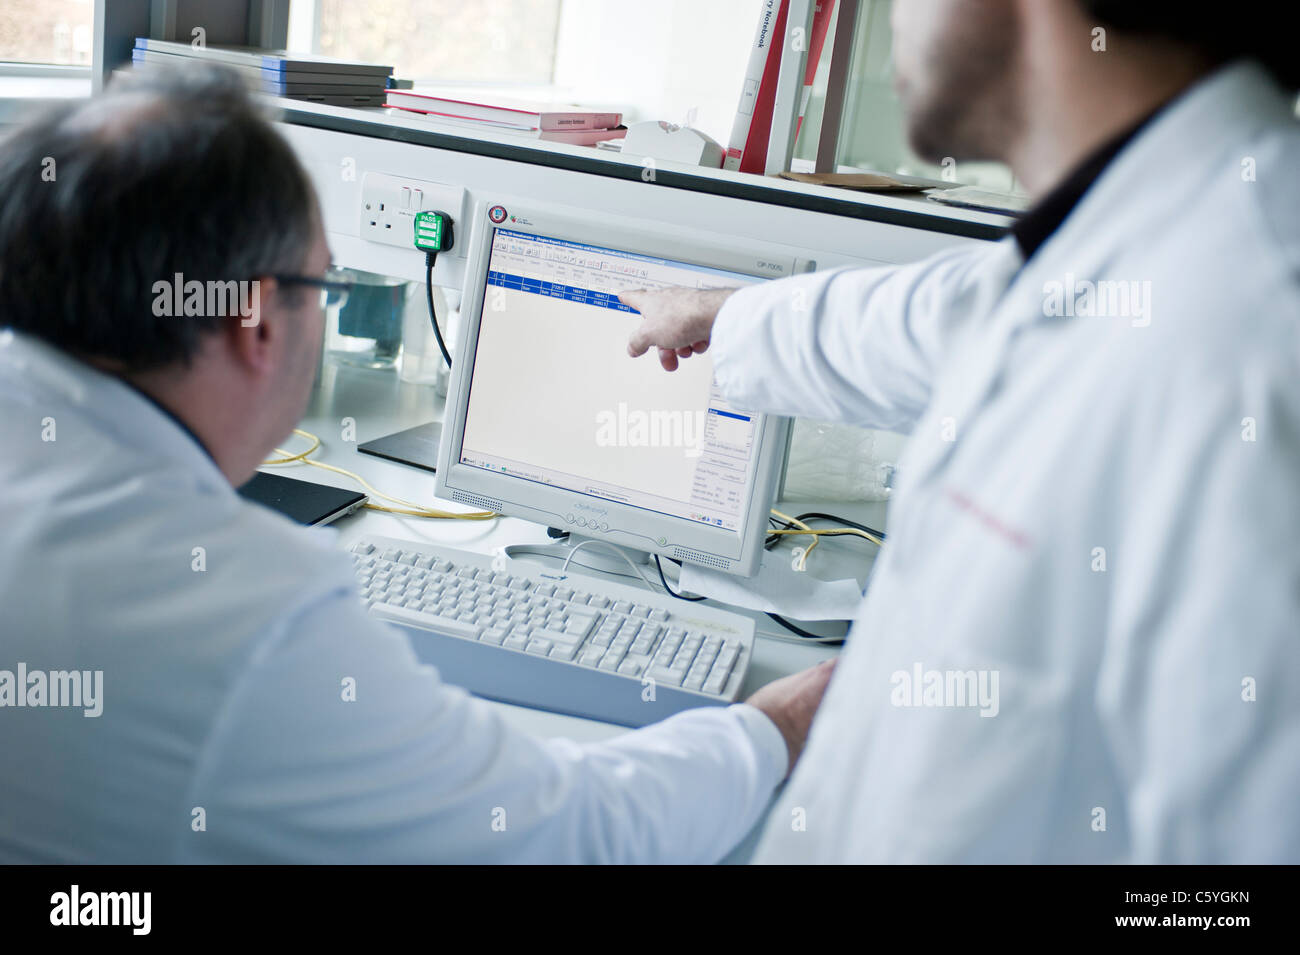 Scientifiques masculins en sarraus de laboratoire à la recherche de données scientifiques sur l'écran de l'ordinateur in laboratory Banque D'Images